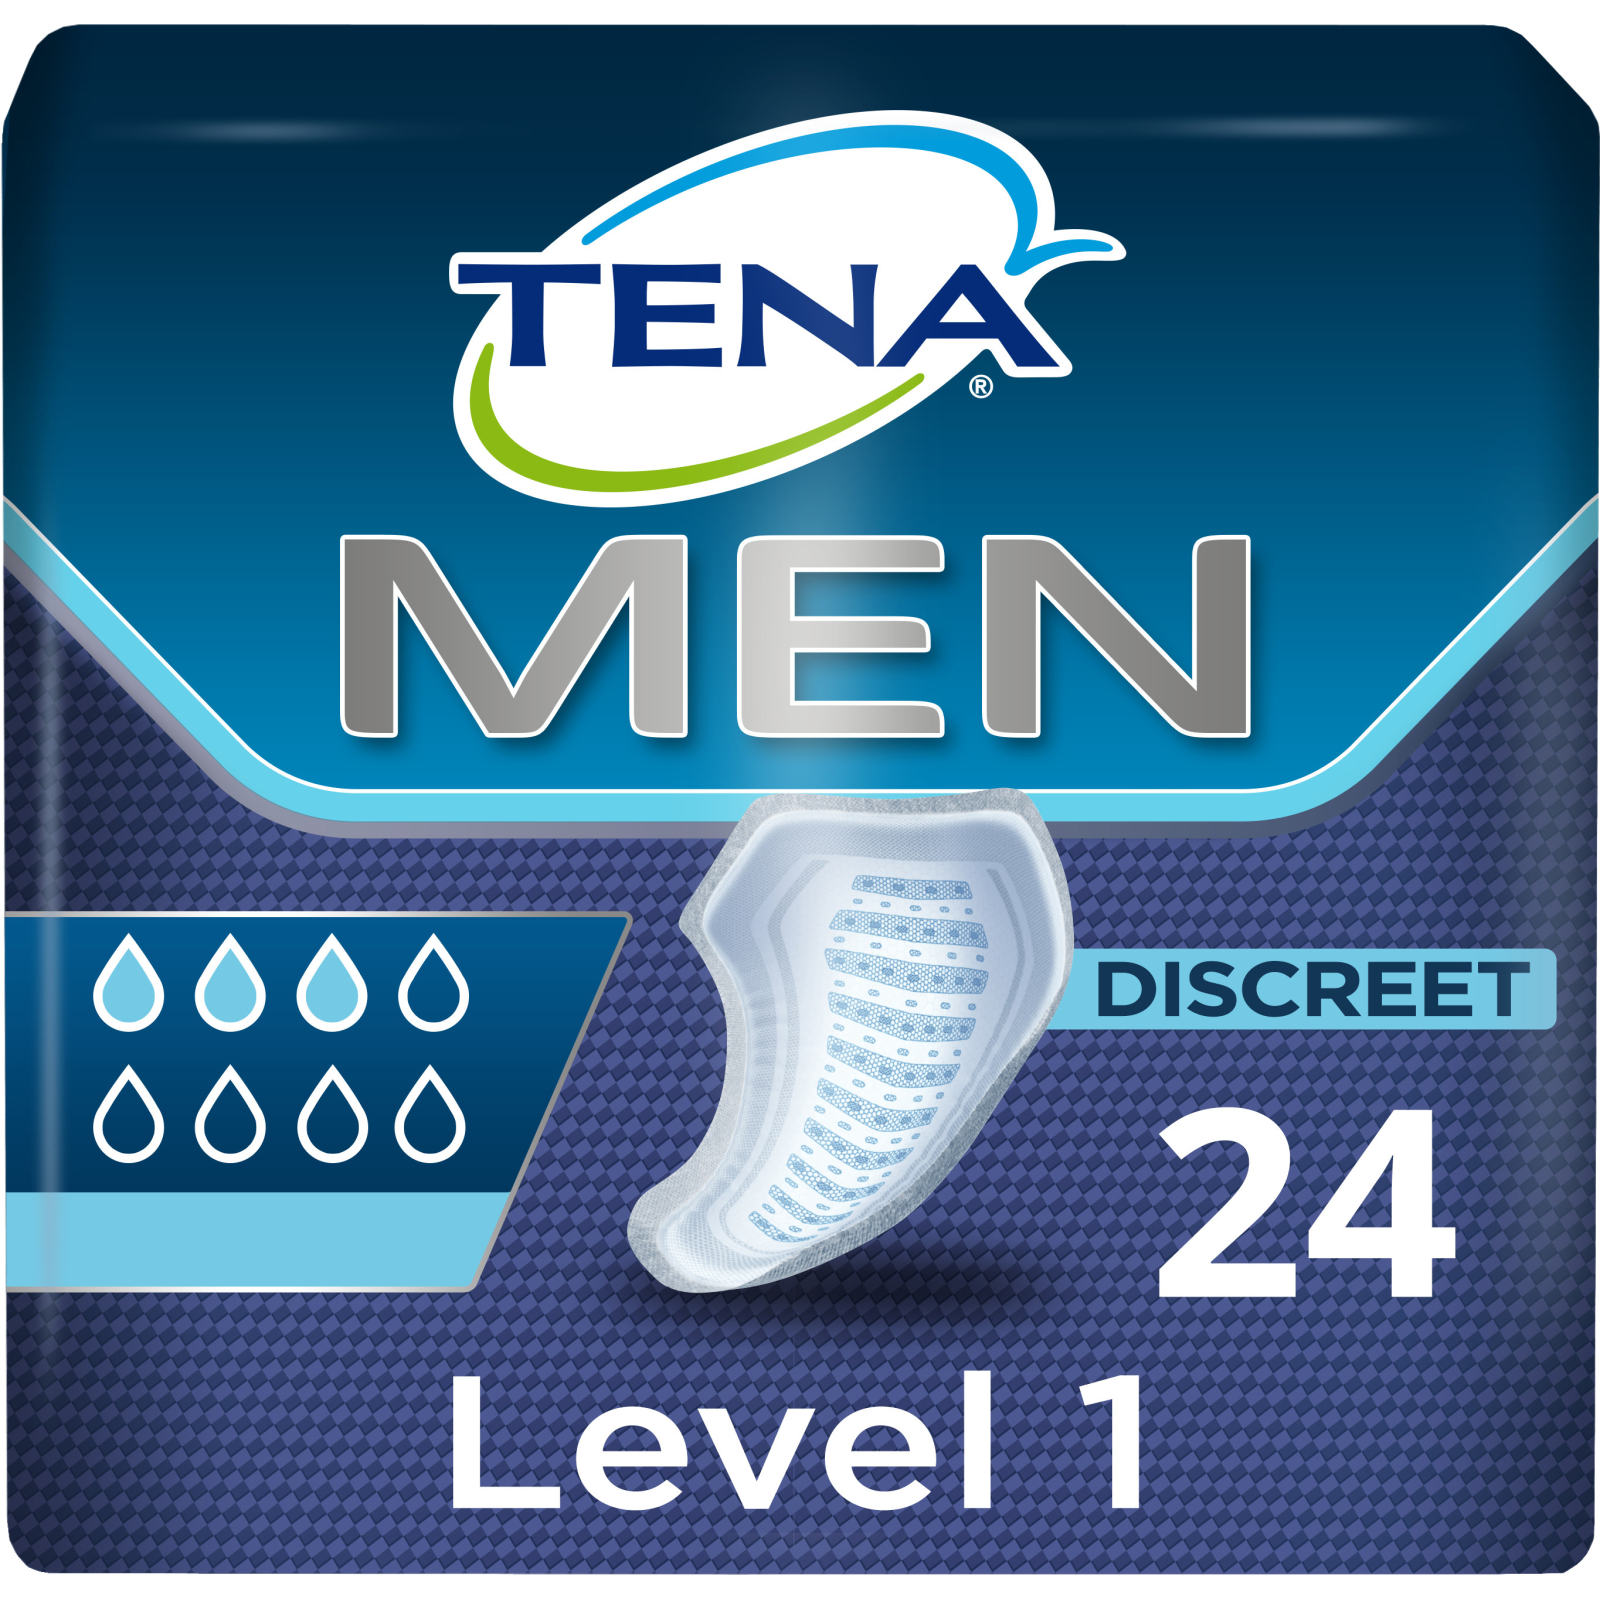 Урологічні прокладки Tena for Men Level 1 12 шт. (7322540426335)